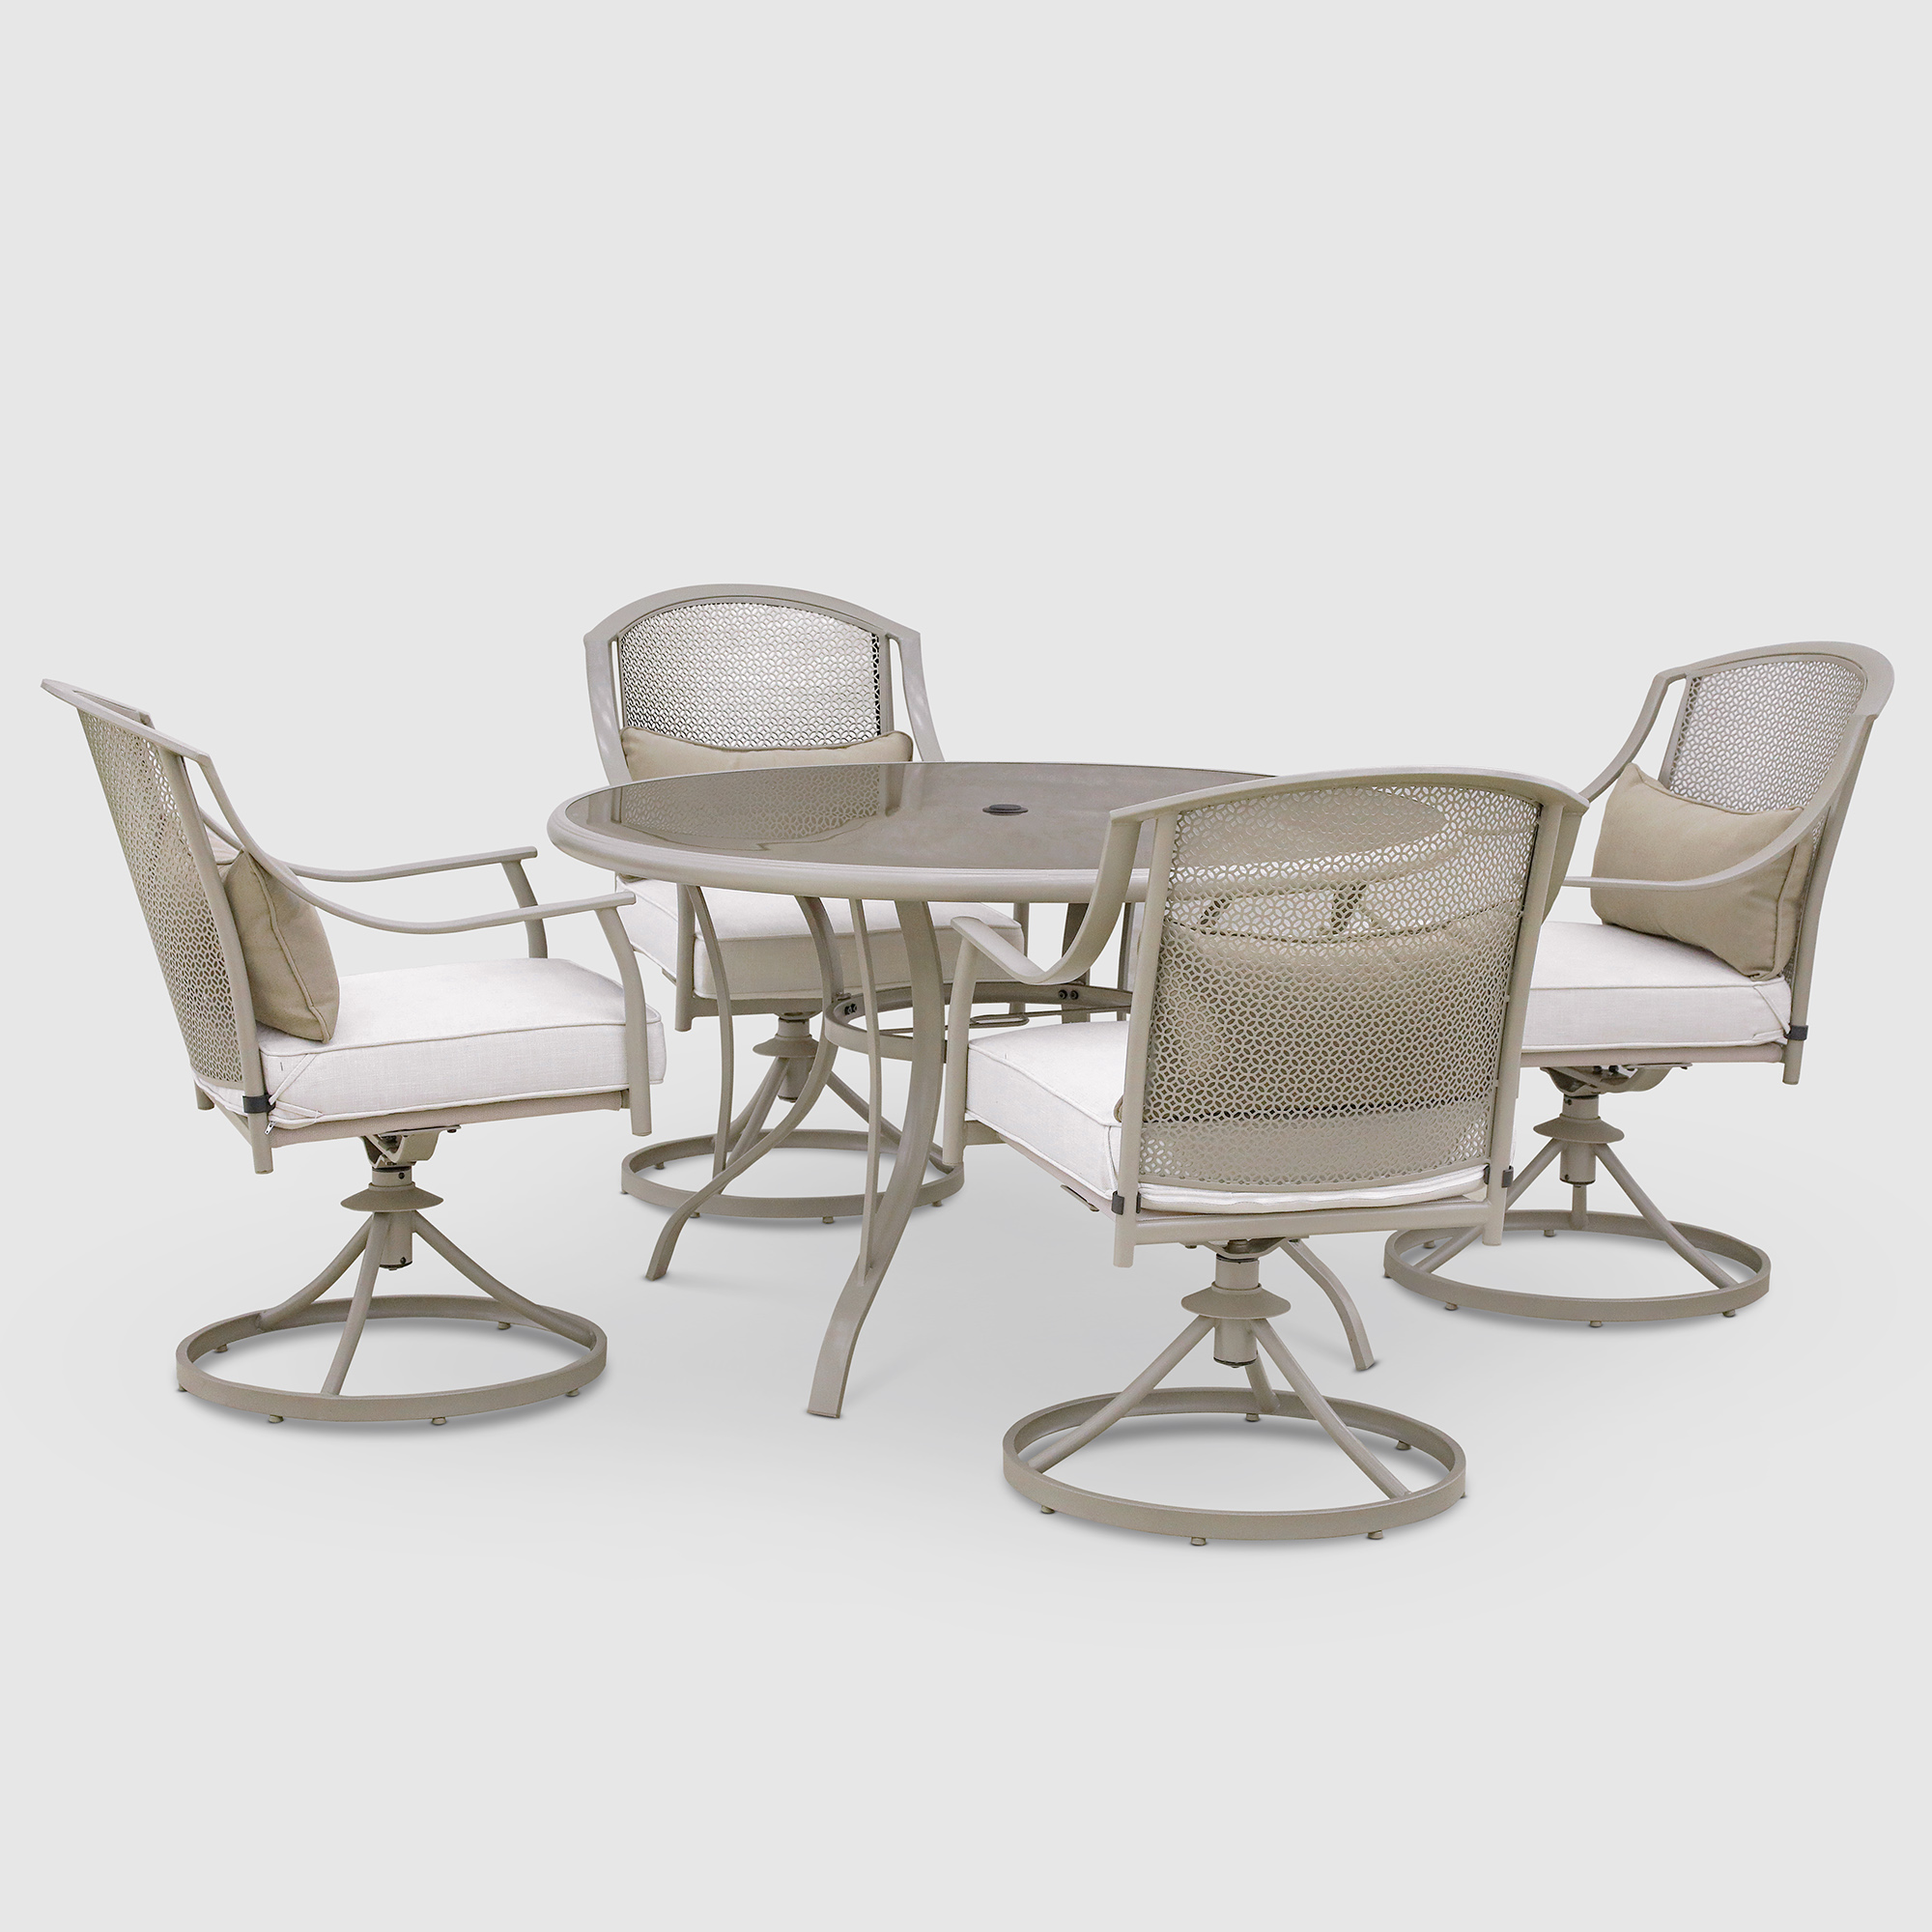 Комплект мебели Greenpatio с вращающимися стульями 5 предметов комплект мебели greenpatio с вращающимися стульями 5 предметов